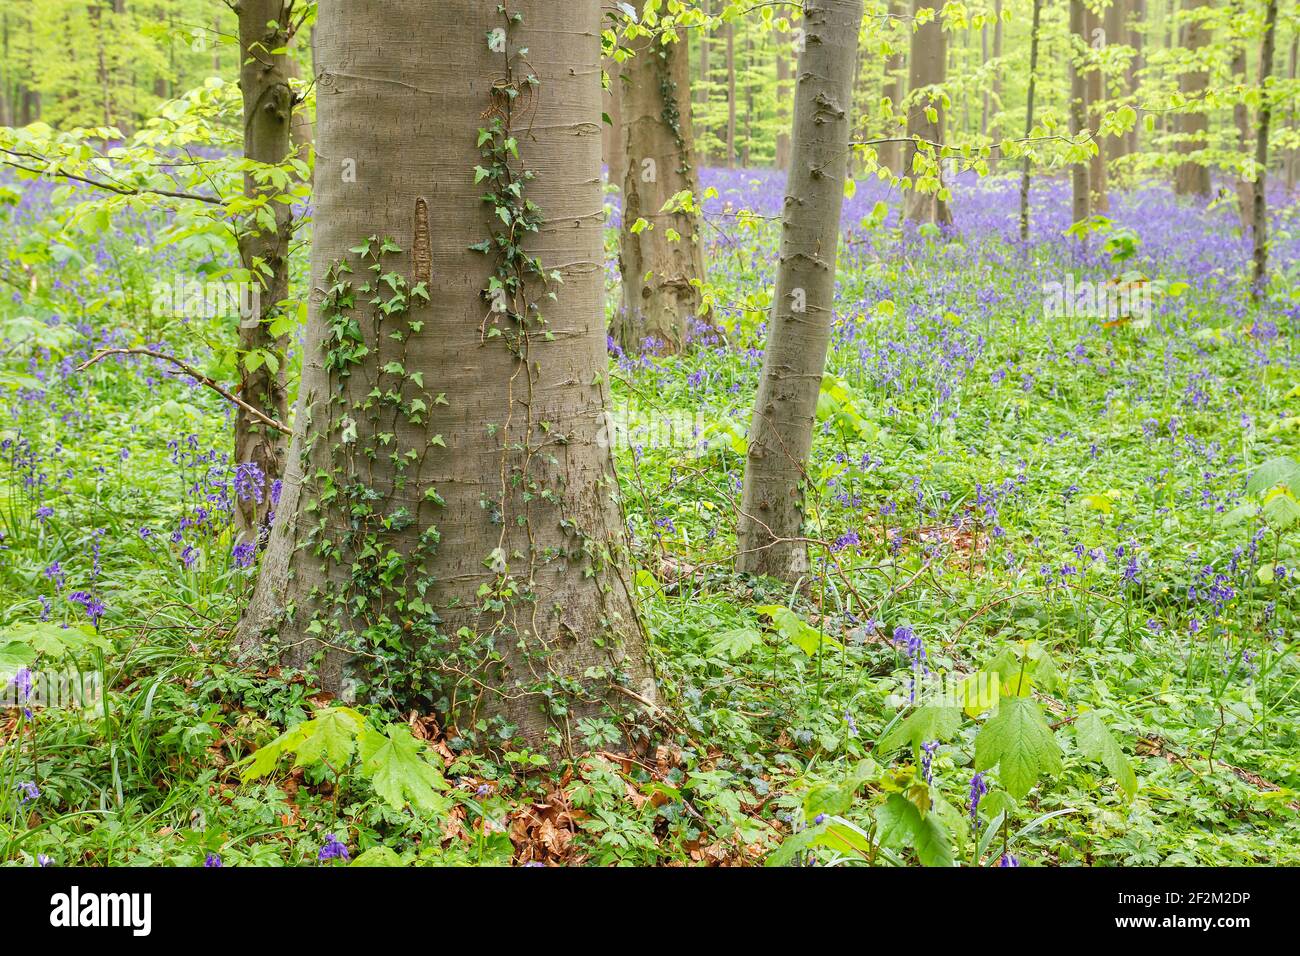 Détail de l'écosystème de la forêt printanière avec des fleurs de bluebell pourpres en fleurs et une végétation sauvage parmi les hêtres, la nature et le concept environnemental Banque D'Images